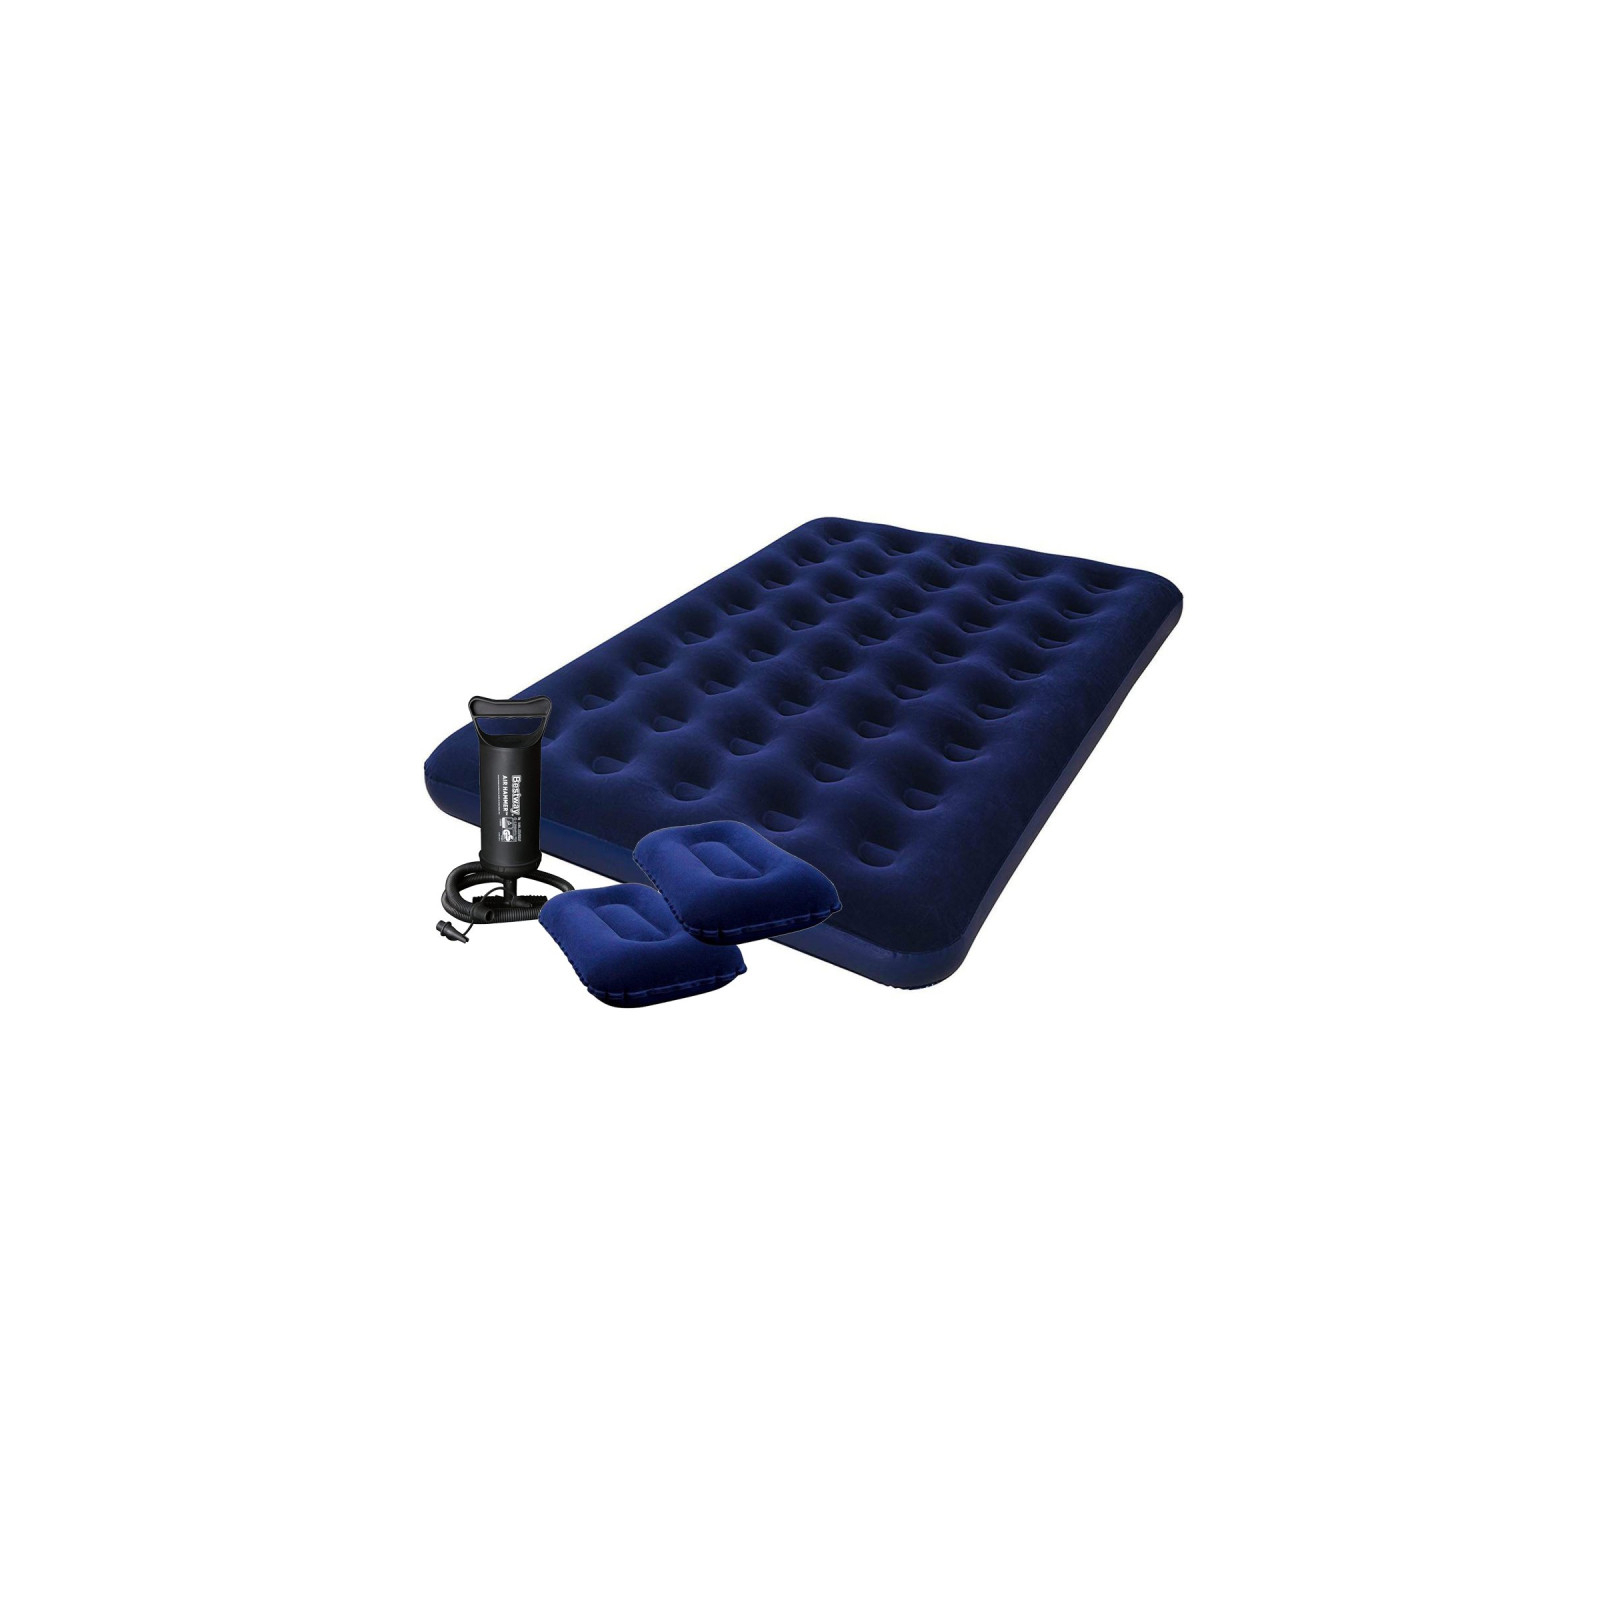 Матрас надувной BestWay Pavillo велюр Синій 152 х 203 х 22 см (67374)